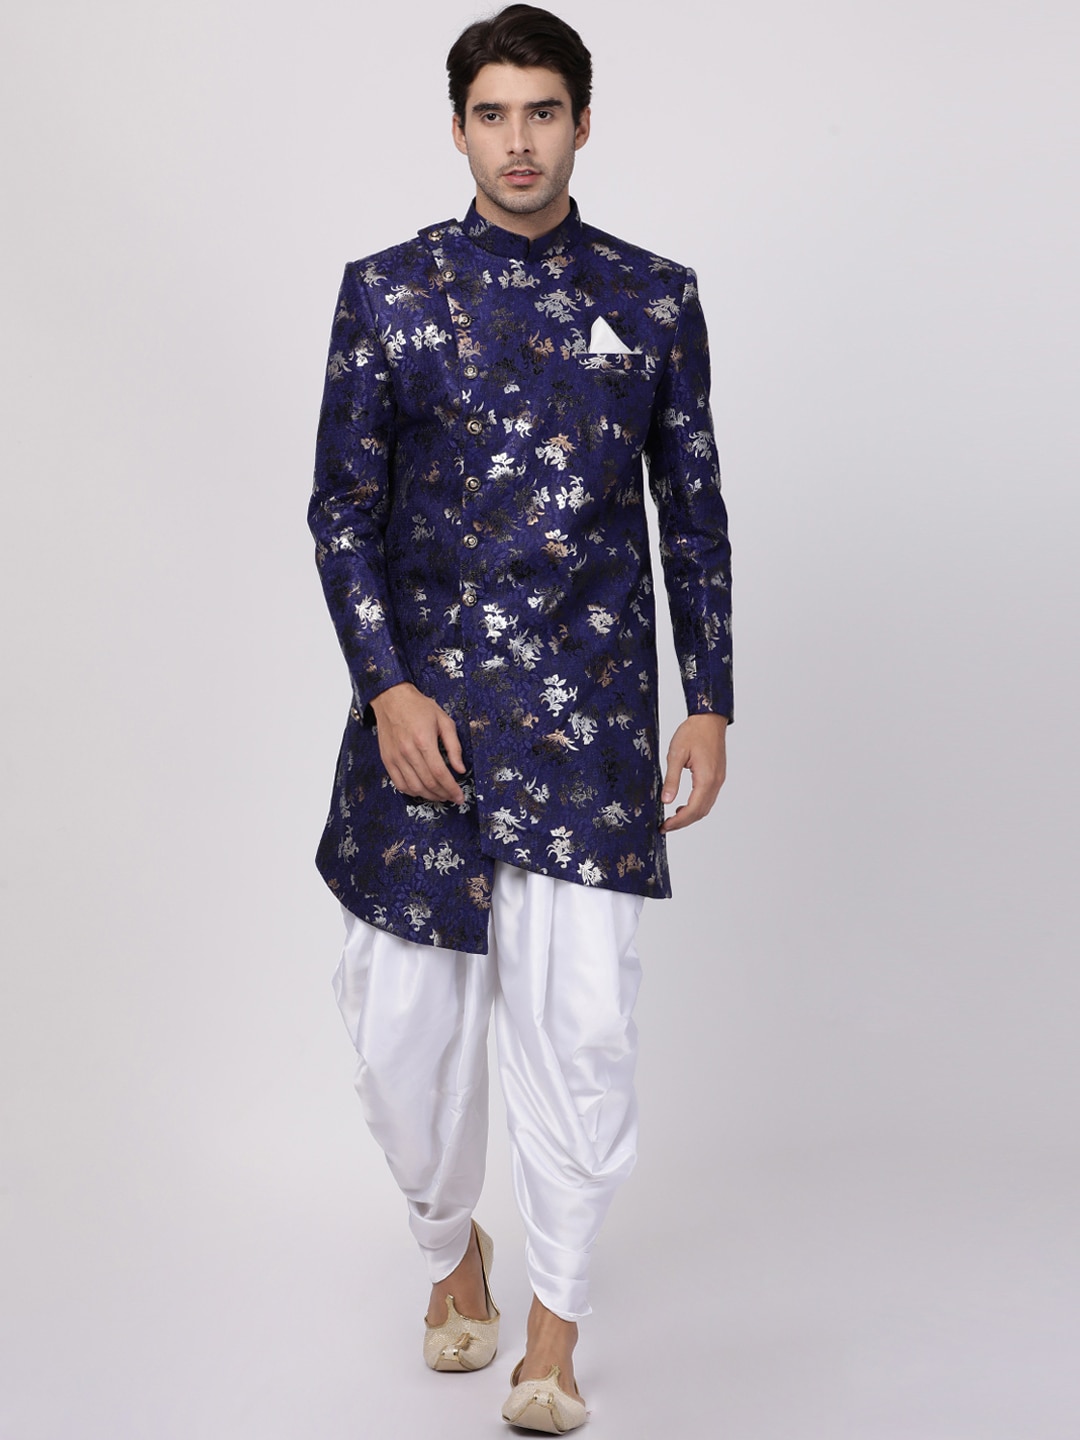 VASTRAMAY Men Royal Blue & White Floral Printed Sherwani With Dhoti Pant Set